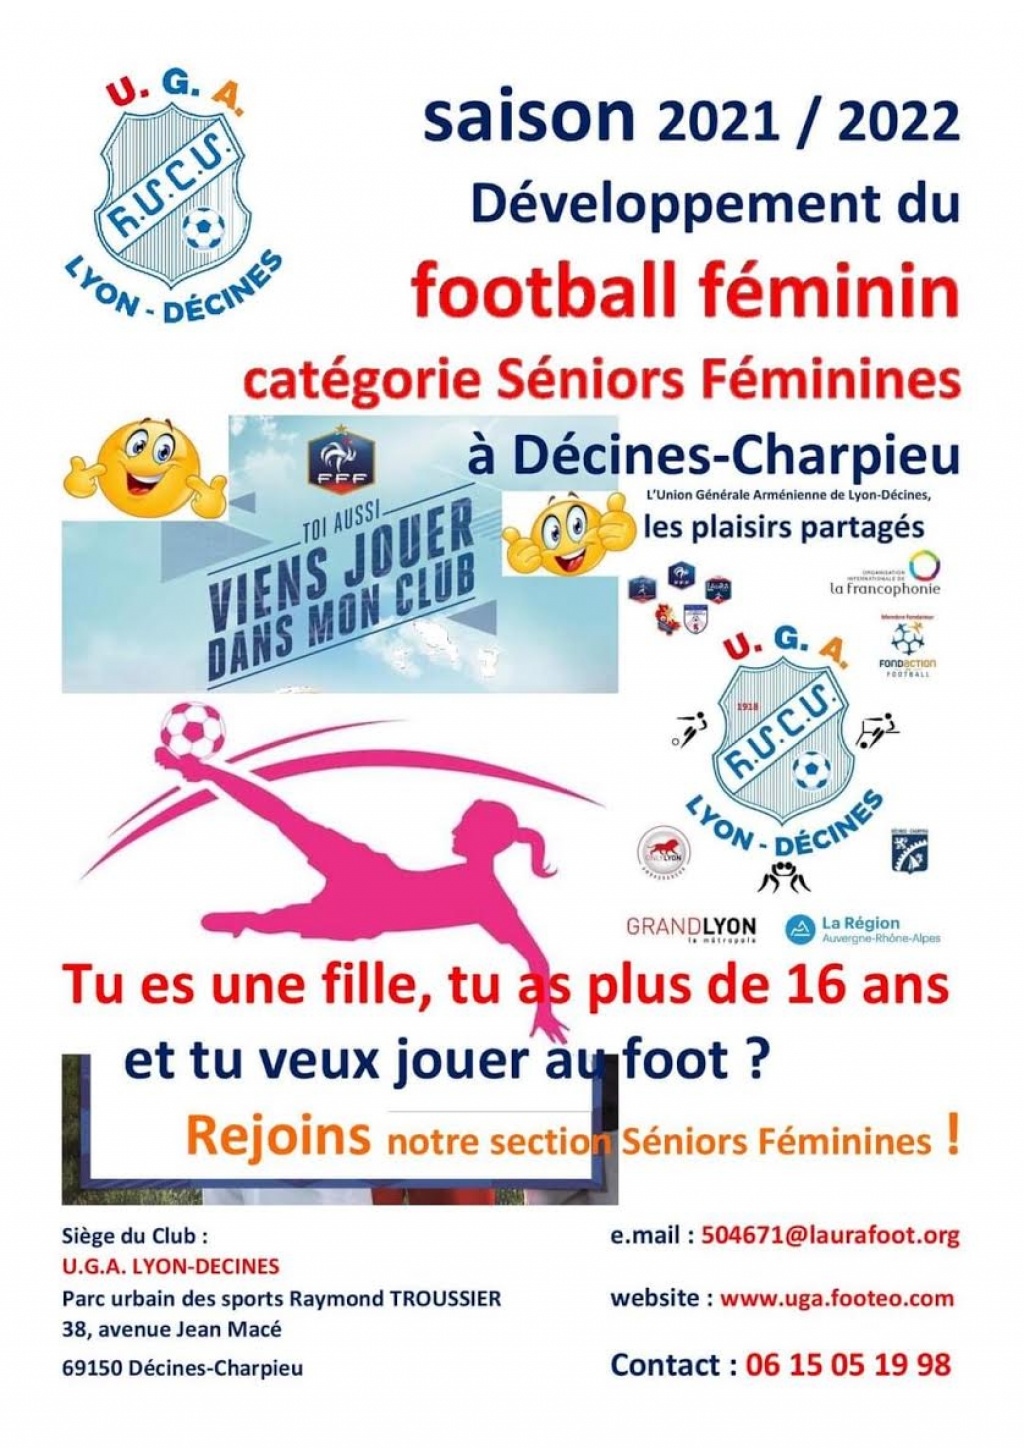 Développement du Football féminin catégorie Séniors Féminines à Décines-Charpieu ! Saison 2021 / 2022